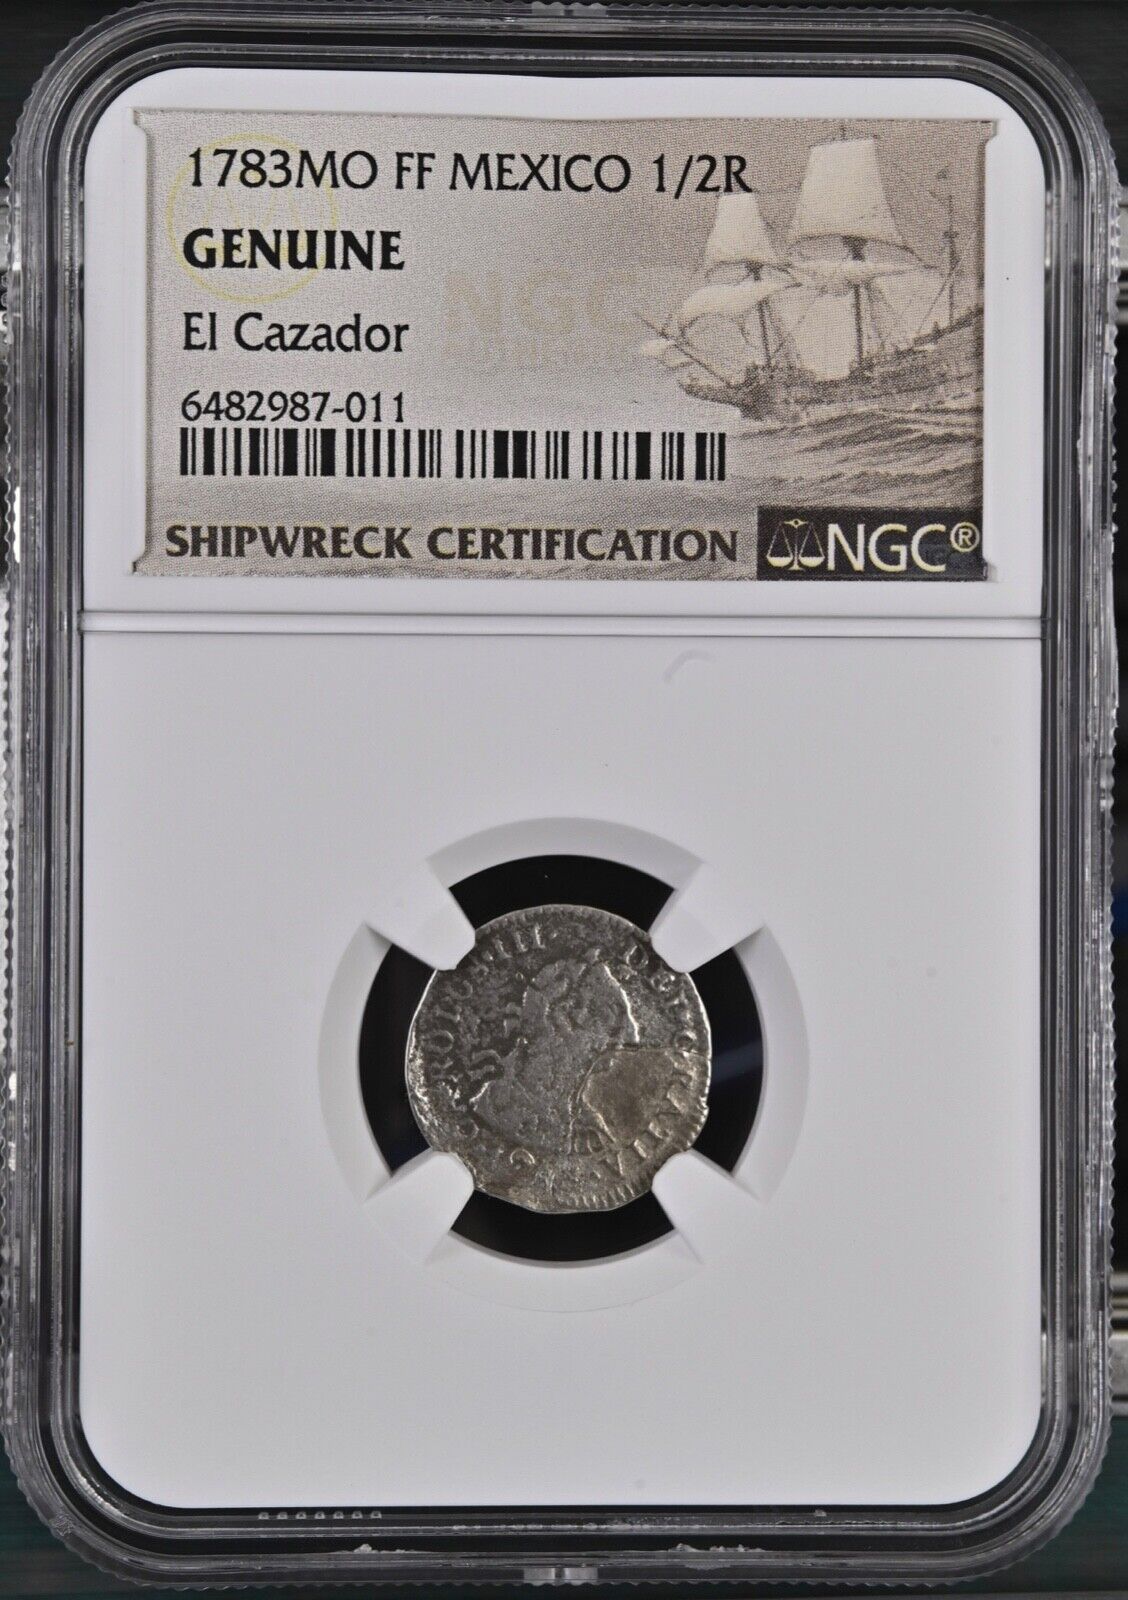 1783 El Cazador Shipwreck 1/2 Real Ngc Genuine Mexico Ff Silver Coin